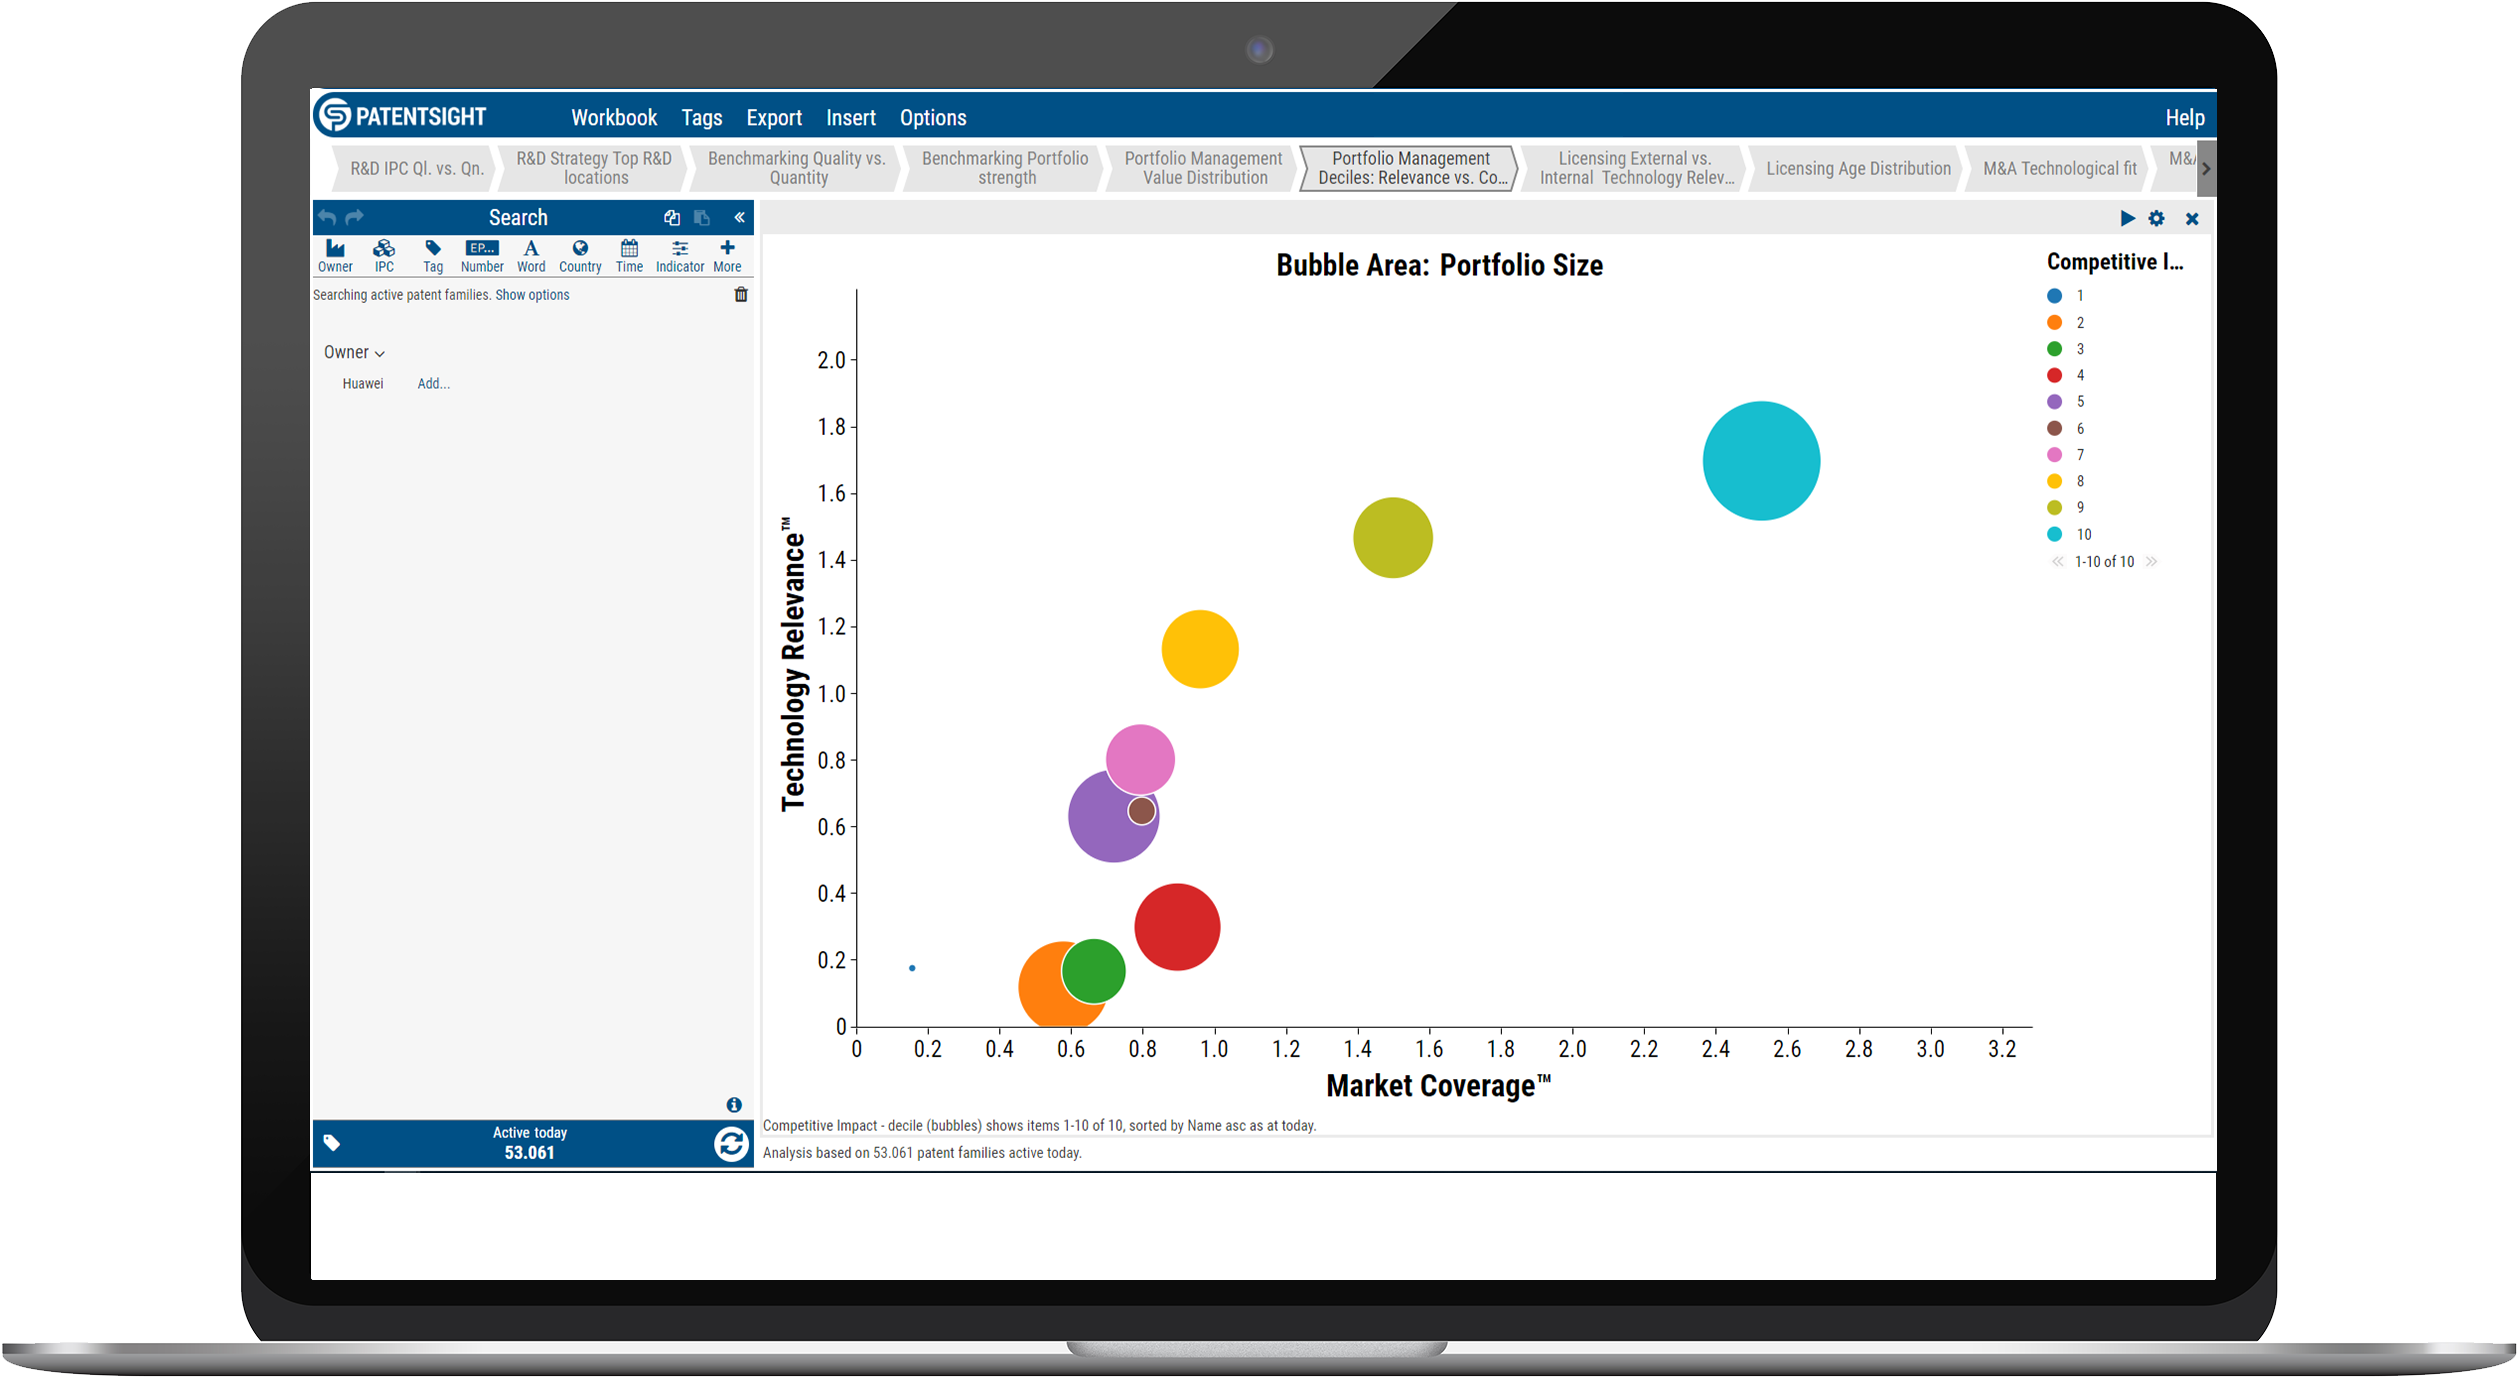 Patent Sight Portfolio Bubble Chart Analysis